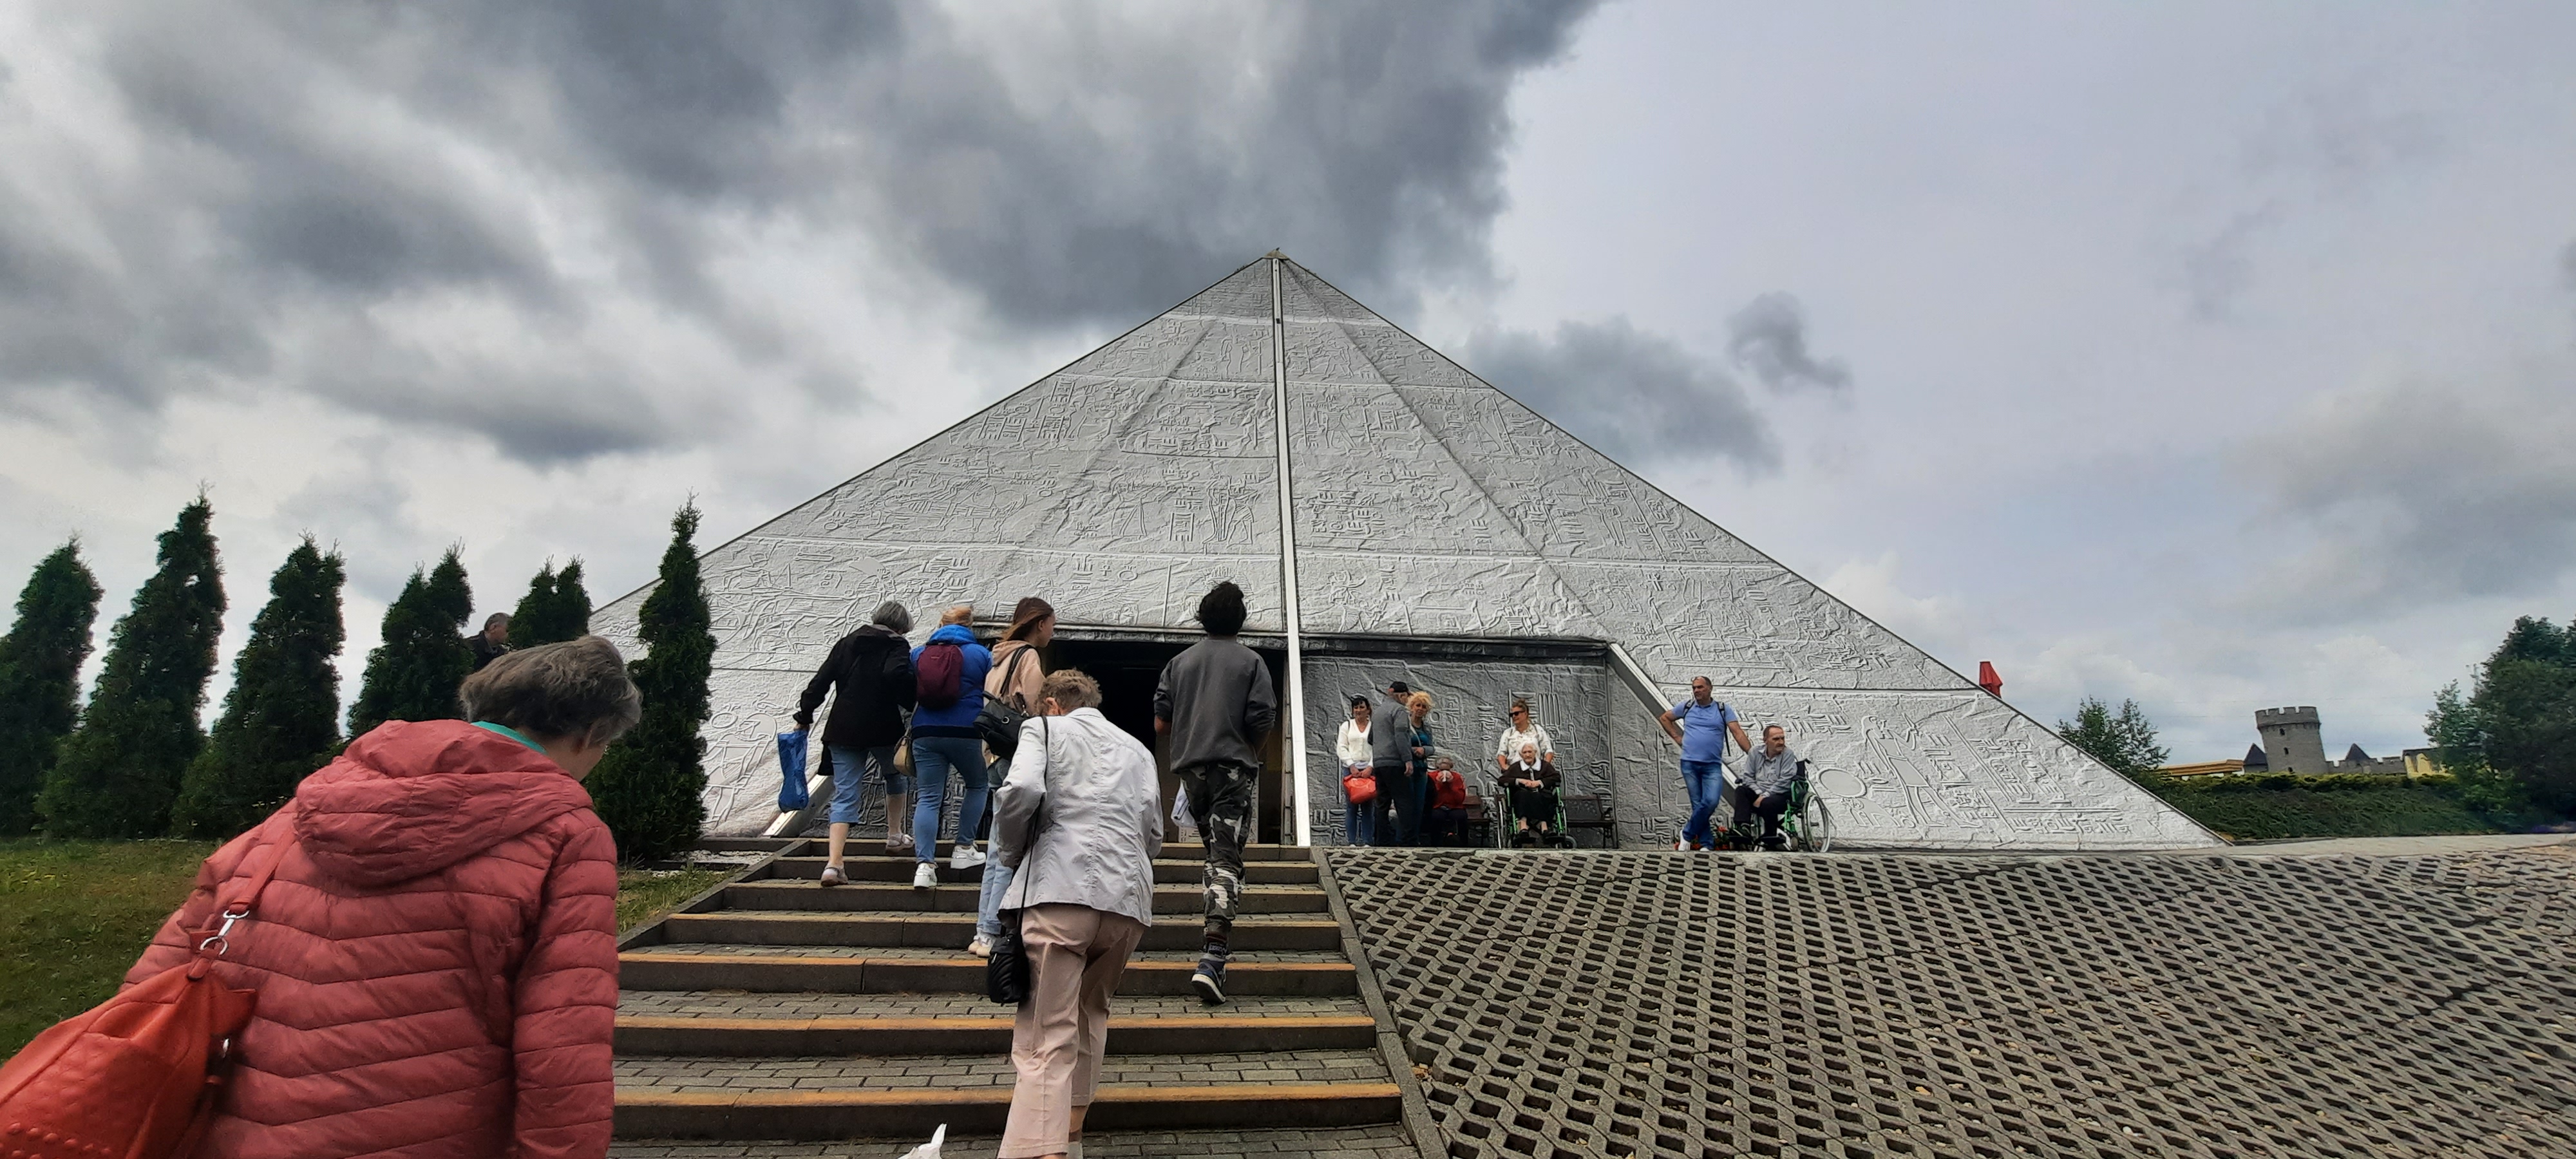 Wycieczka wchodzi po schodach do repliki piramidy